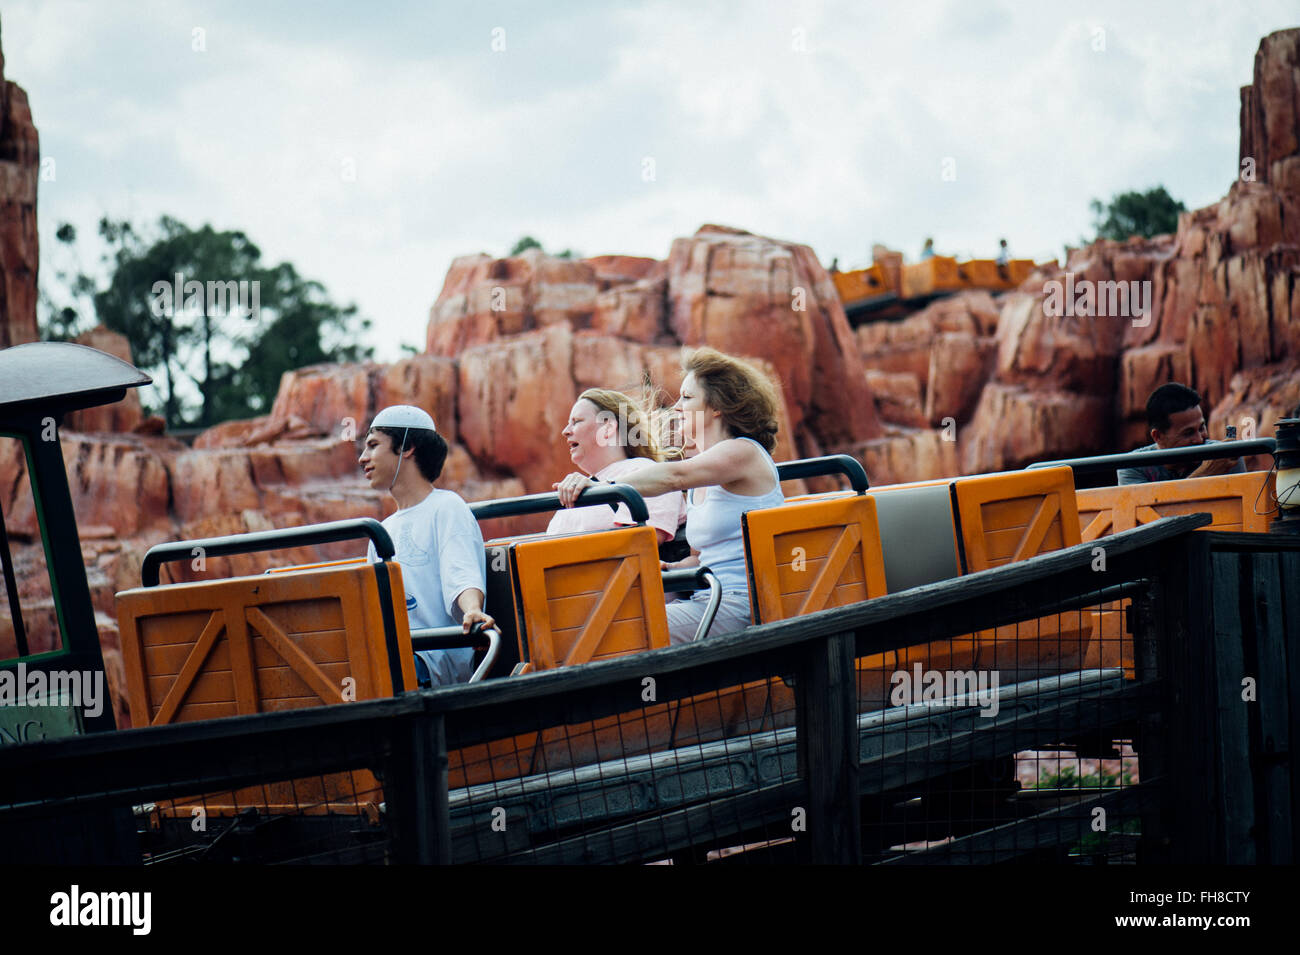 Les jeunes adultes de s'amuser au parc d'attractions de Disney World, Orlando, Floride - Etats-Unis Banque D'Images